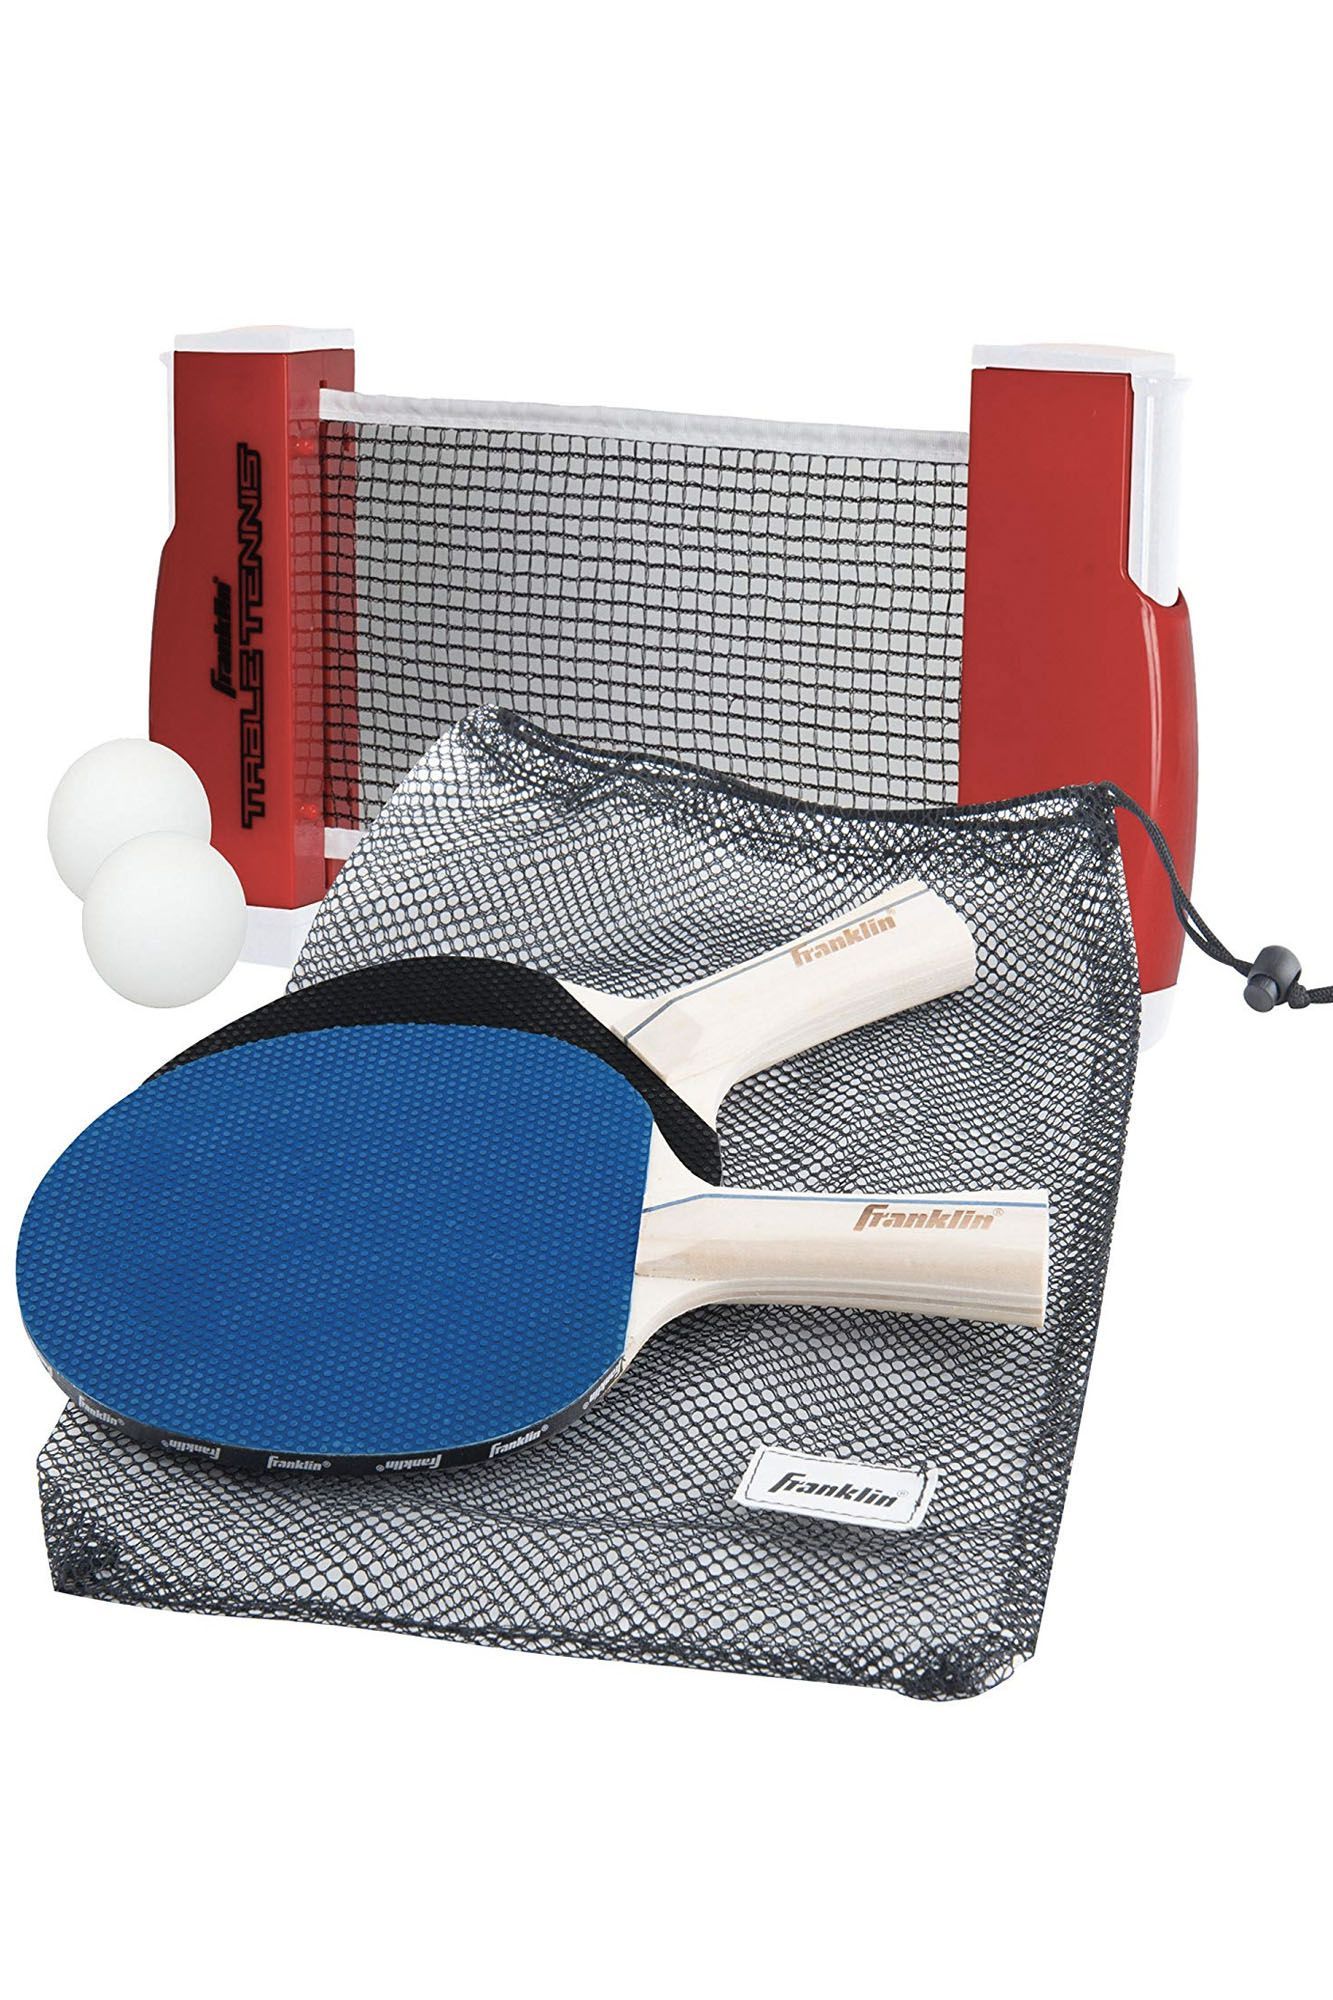 Комплект ракеток для настольного тенниса. ARTENGO 700 ракетка для настольного тенниса. Набор д/настольного тенниса (ракетка 2шт,шар 3шт). Набор для настольный теннис Ping - Pong. Ракетка настольного тенниса start Level 200.